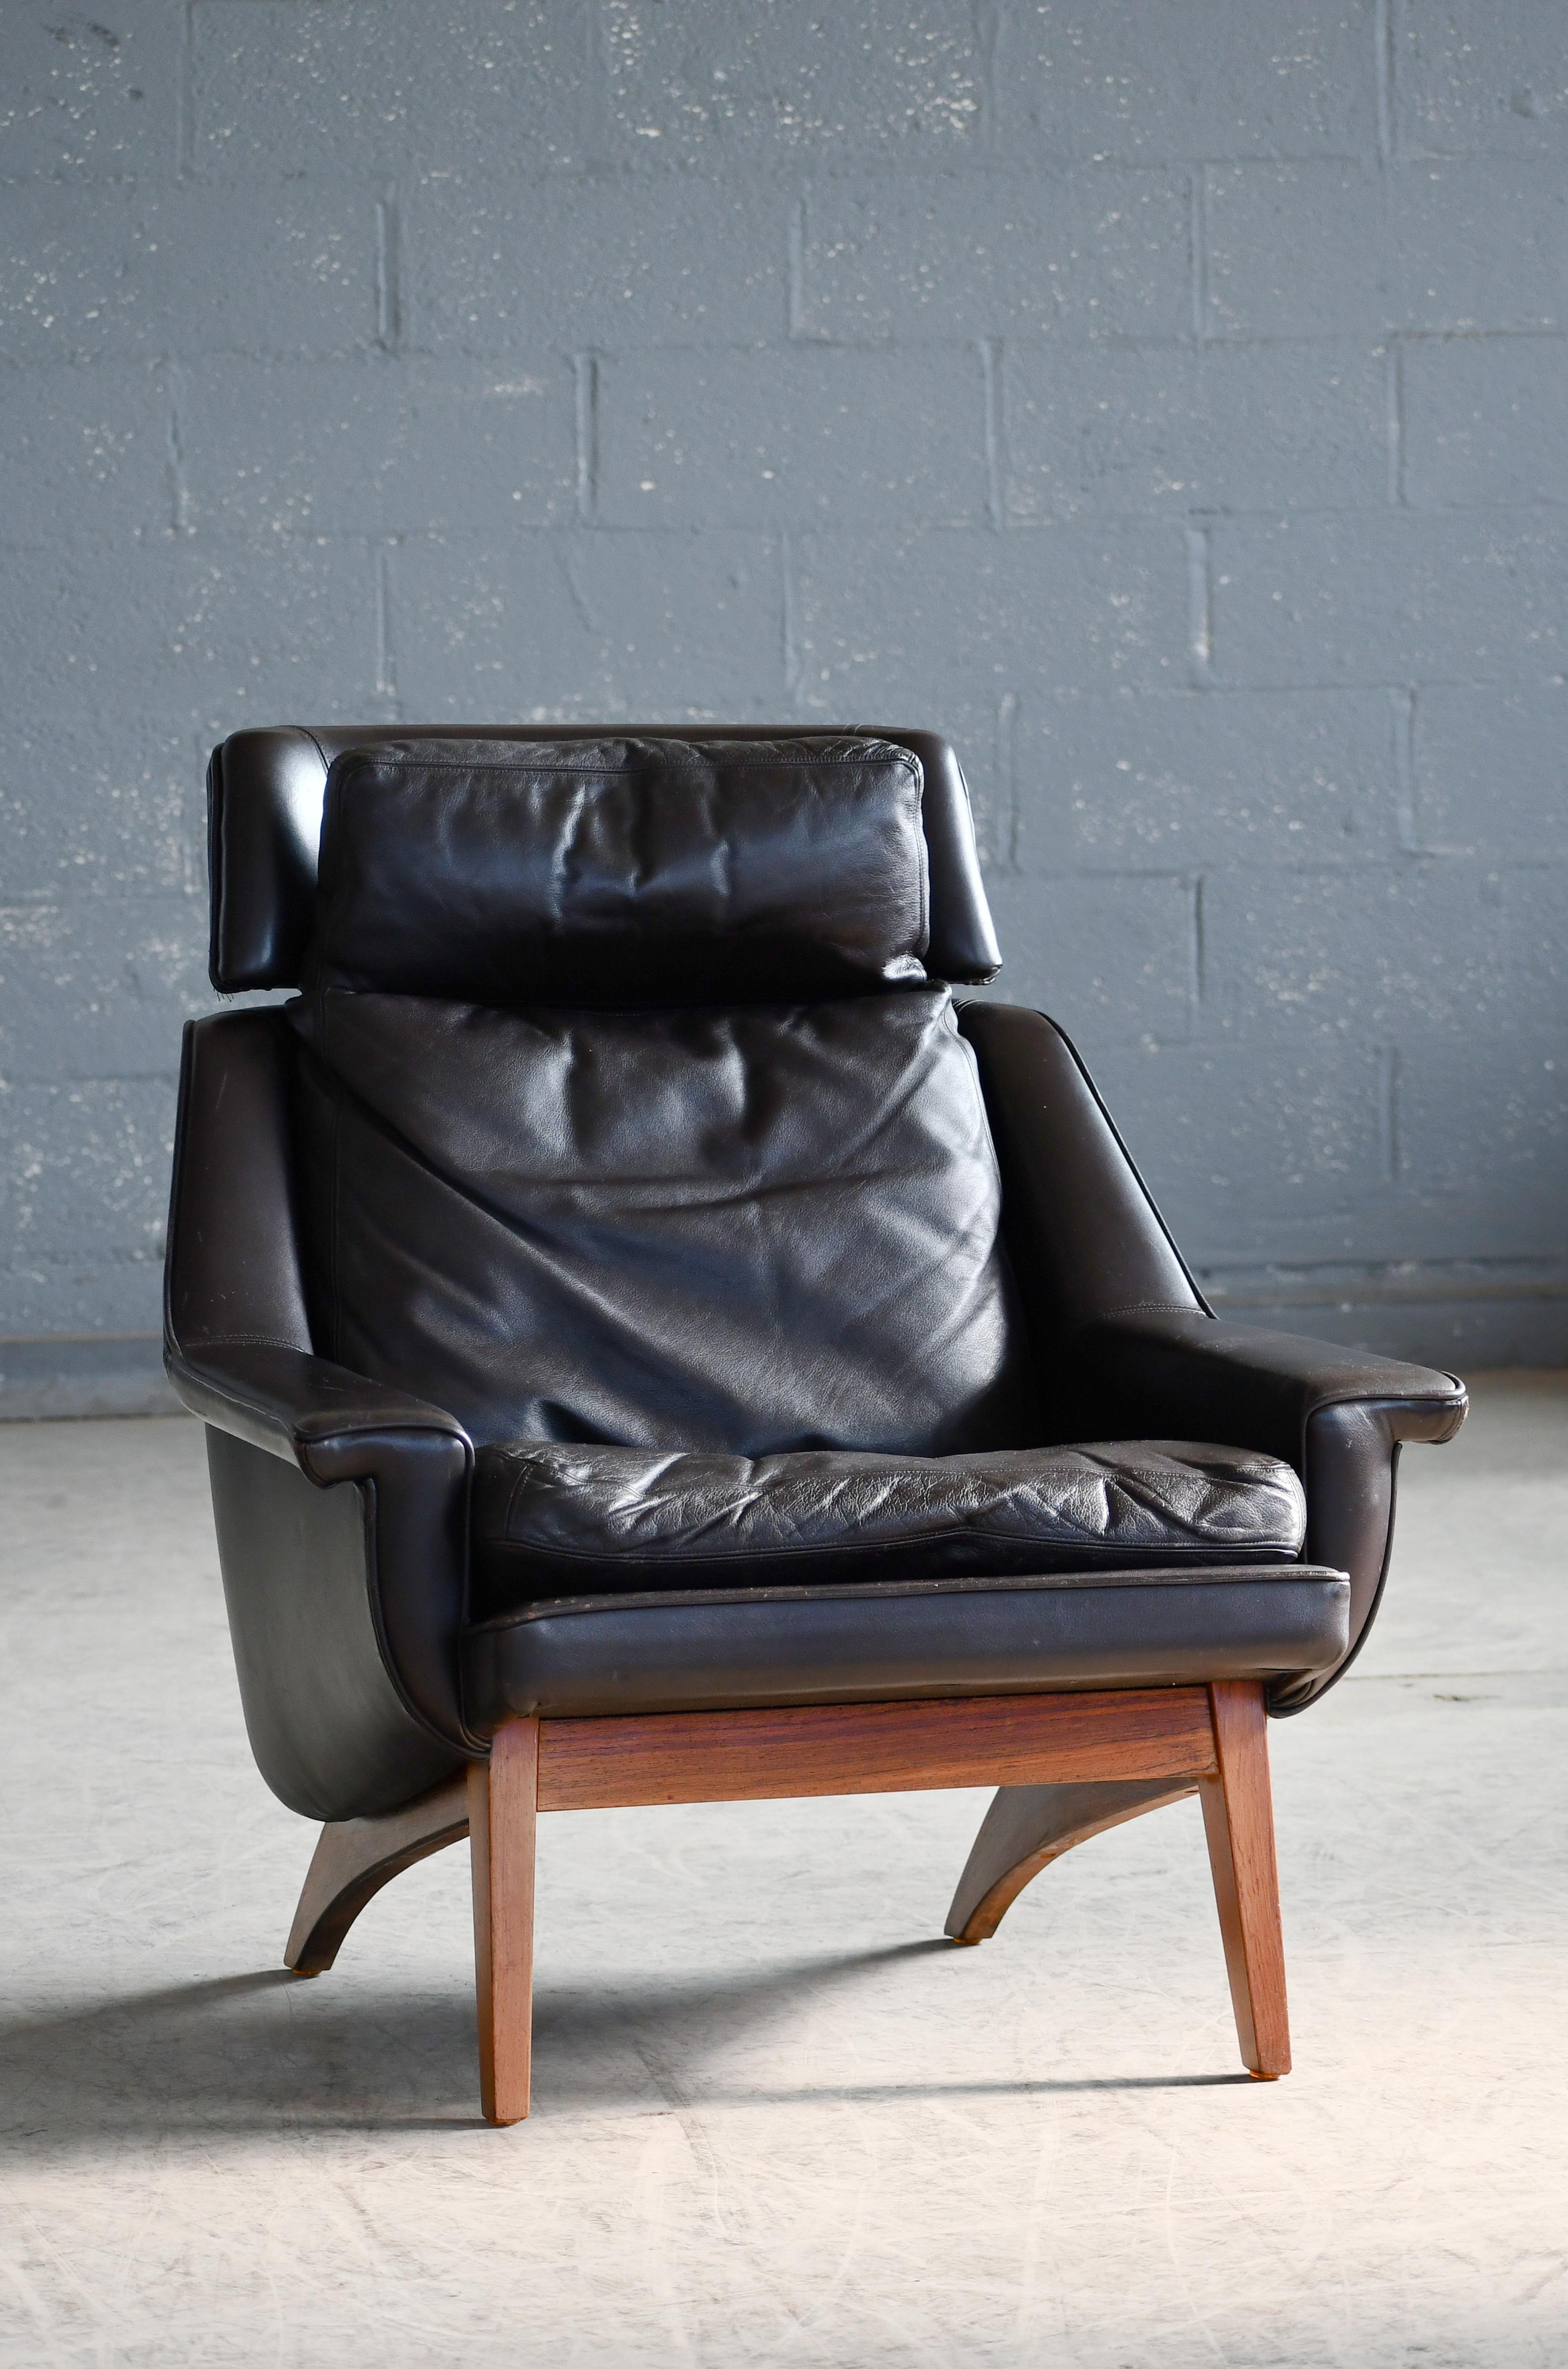 Cette chaise danoise des années 60 est en général une trouvaille rare et encore plus dans ce superbe état. La chaise longue provient d'une entreprise nommée ESA Møbelfabrik à Esbjerg au Danemark et a été conçue par un designer interne nommé